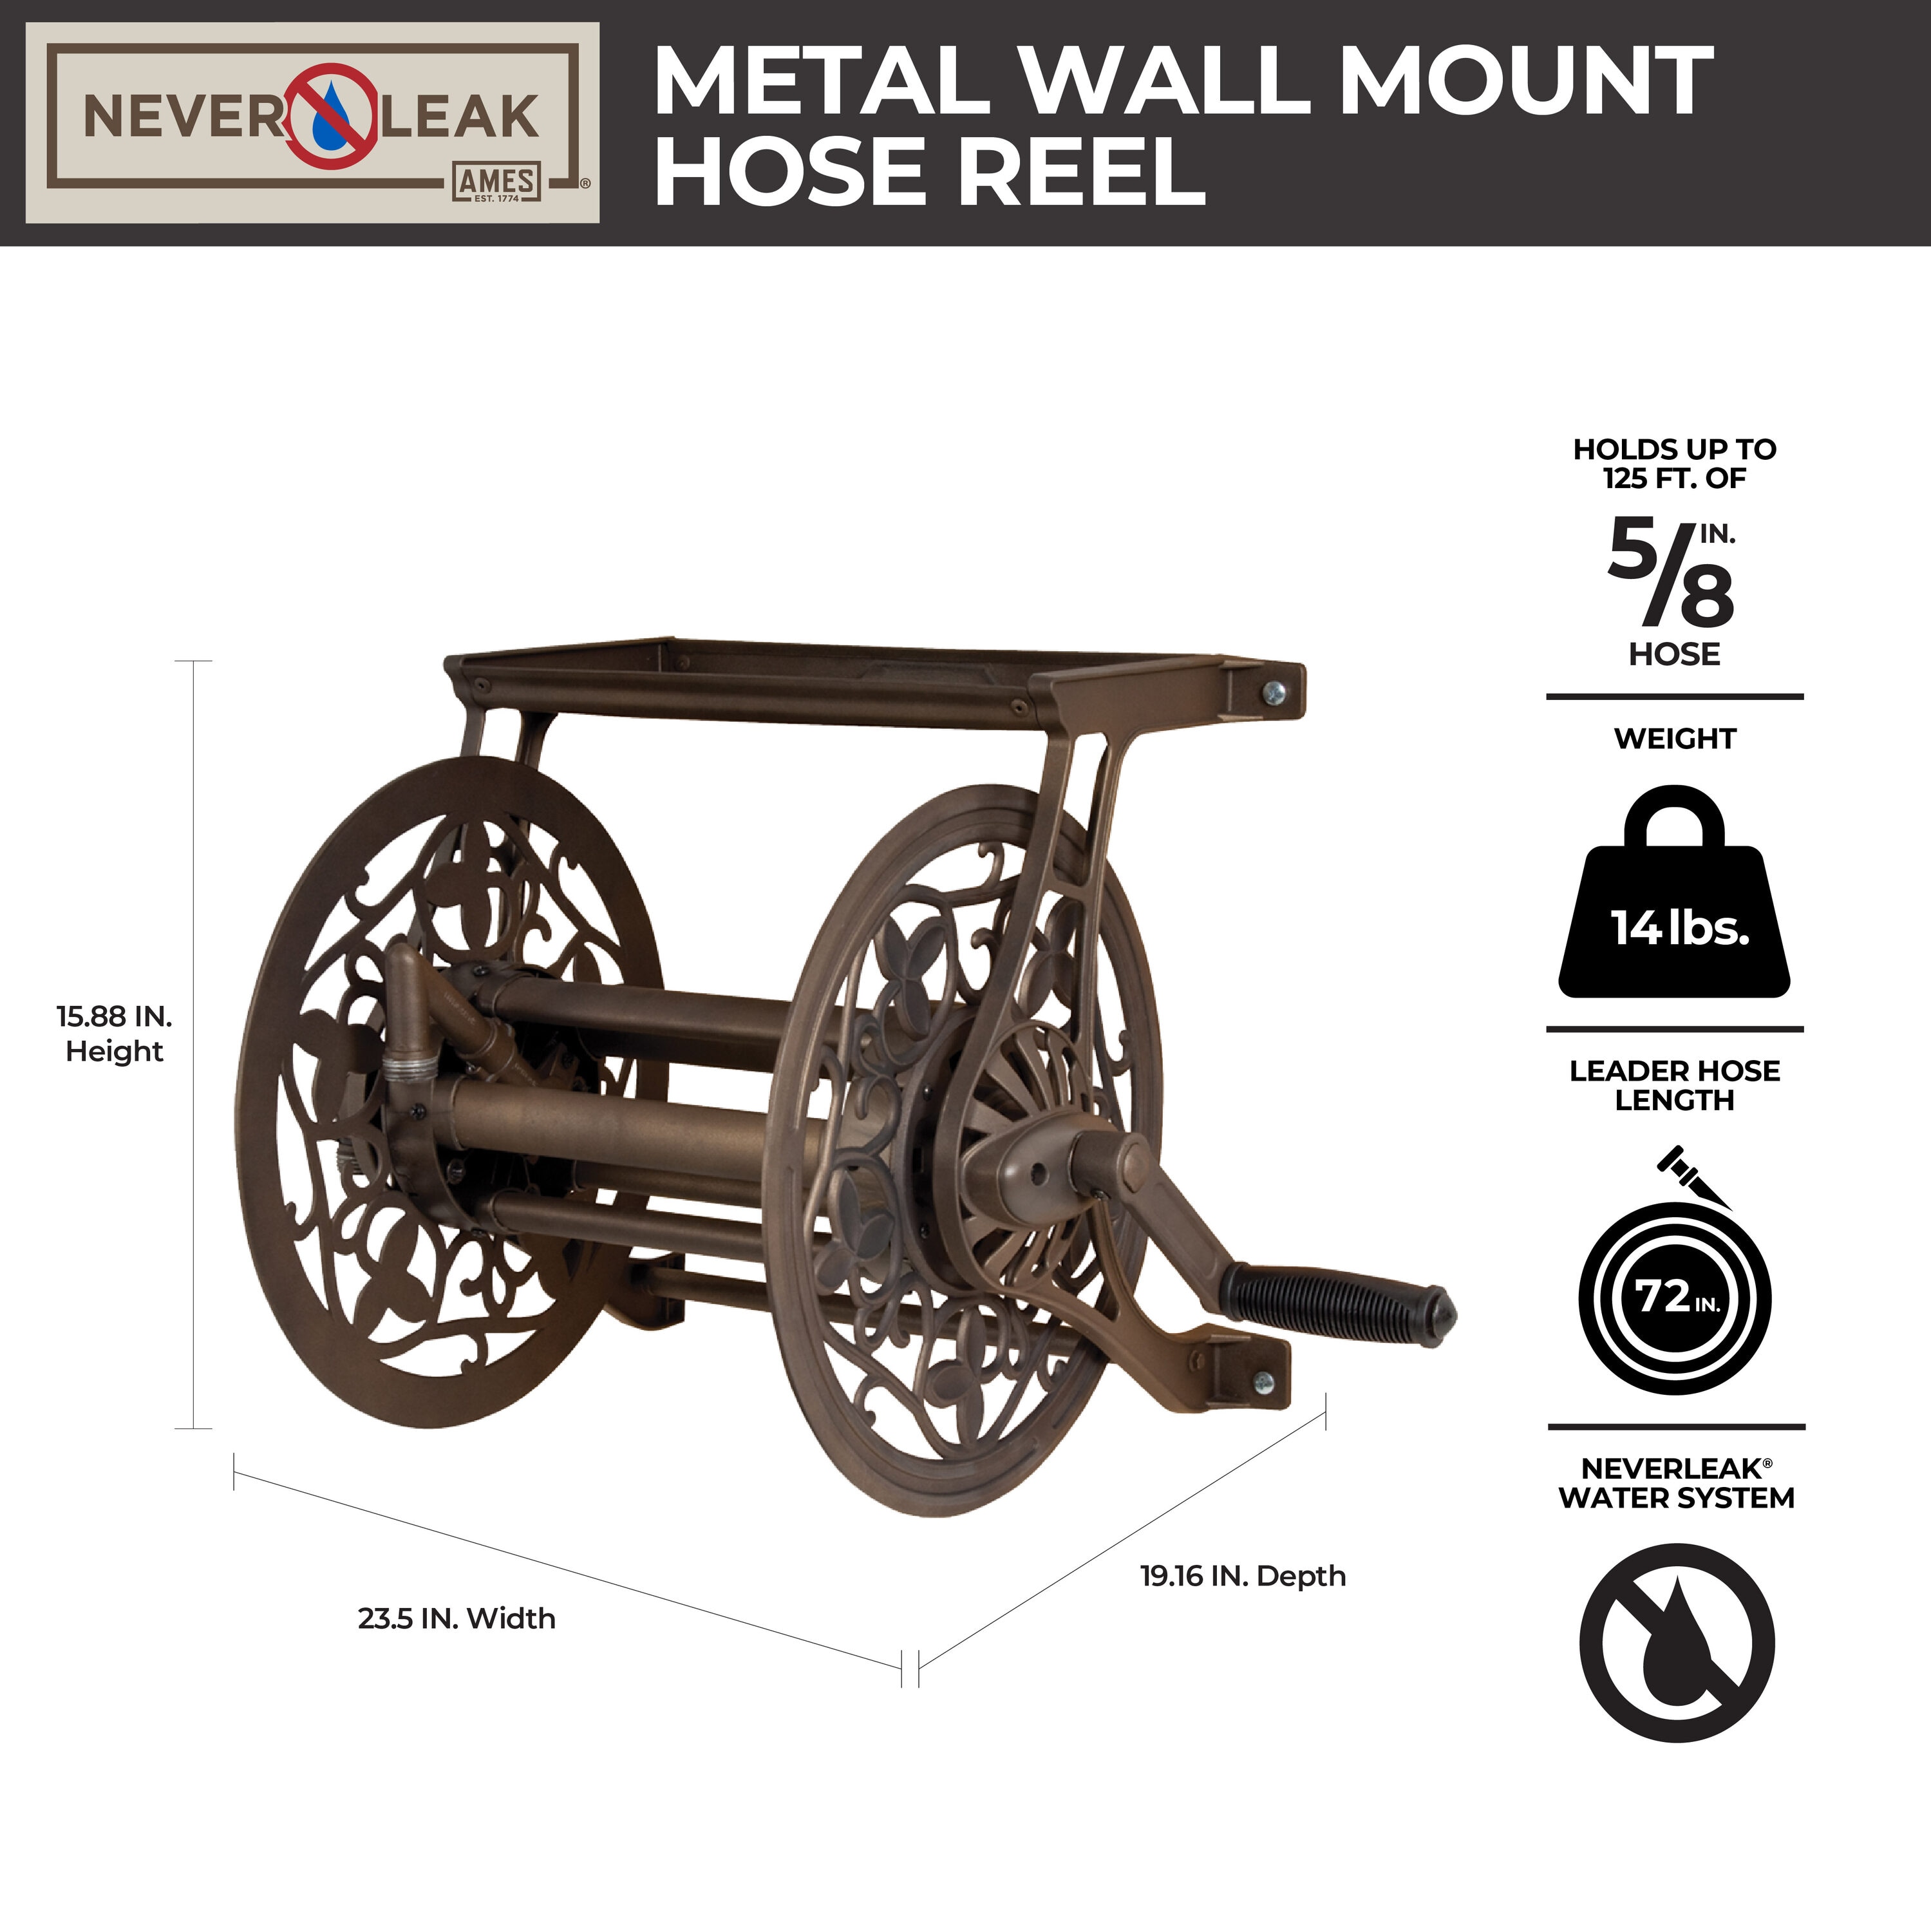 NeverLeak Aluminum 125-ft Wall-mount Hose Reel in the Garden Hose